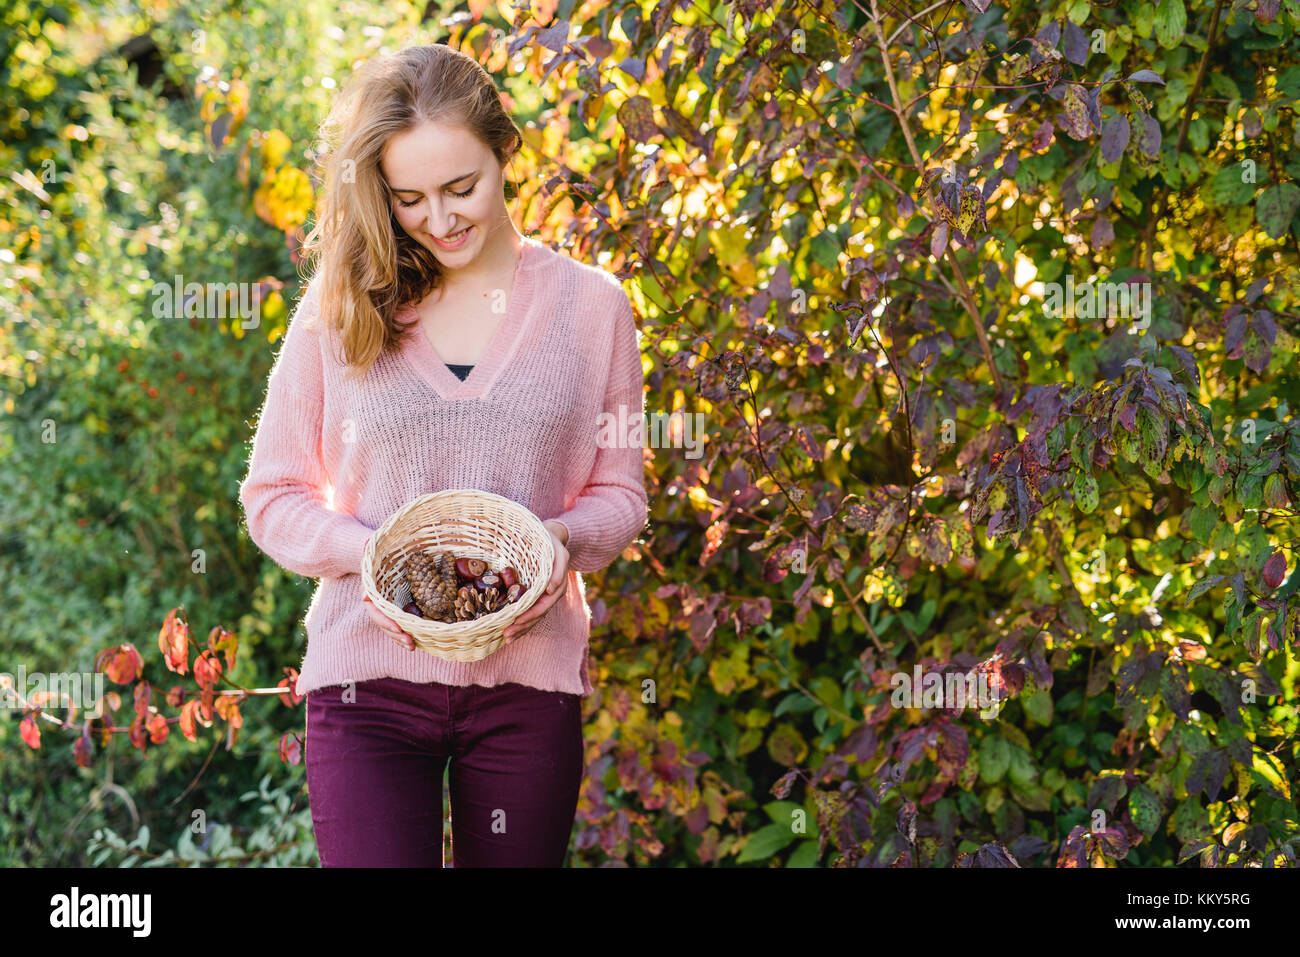 Jardín, mujer joven con cesta recolectando materiales naturales, Foto de stock